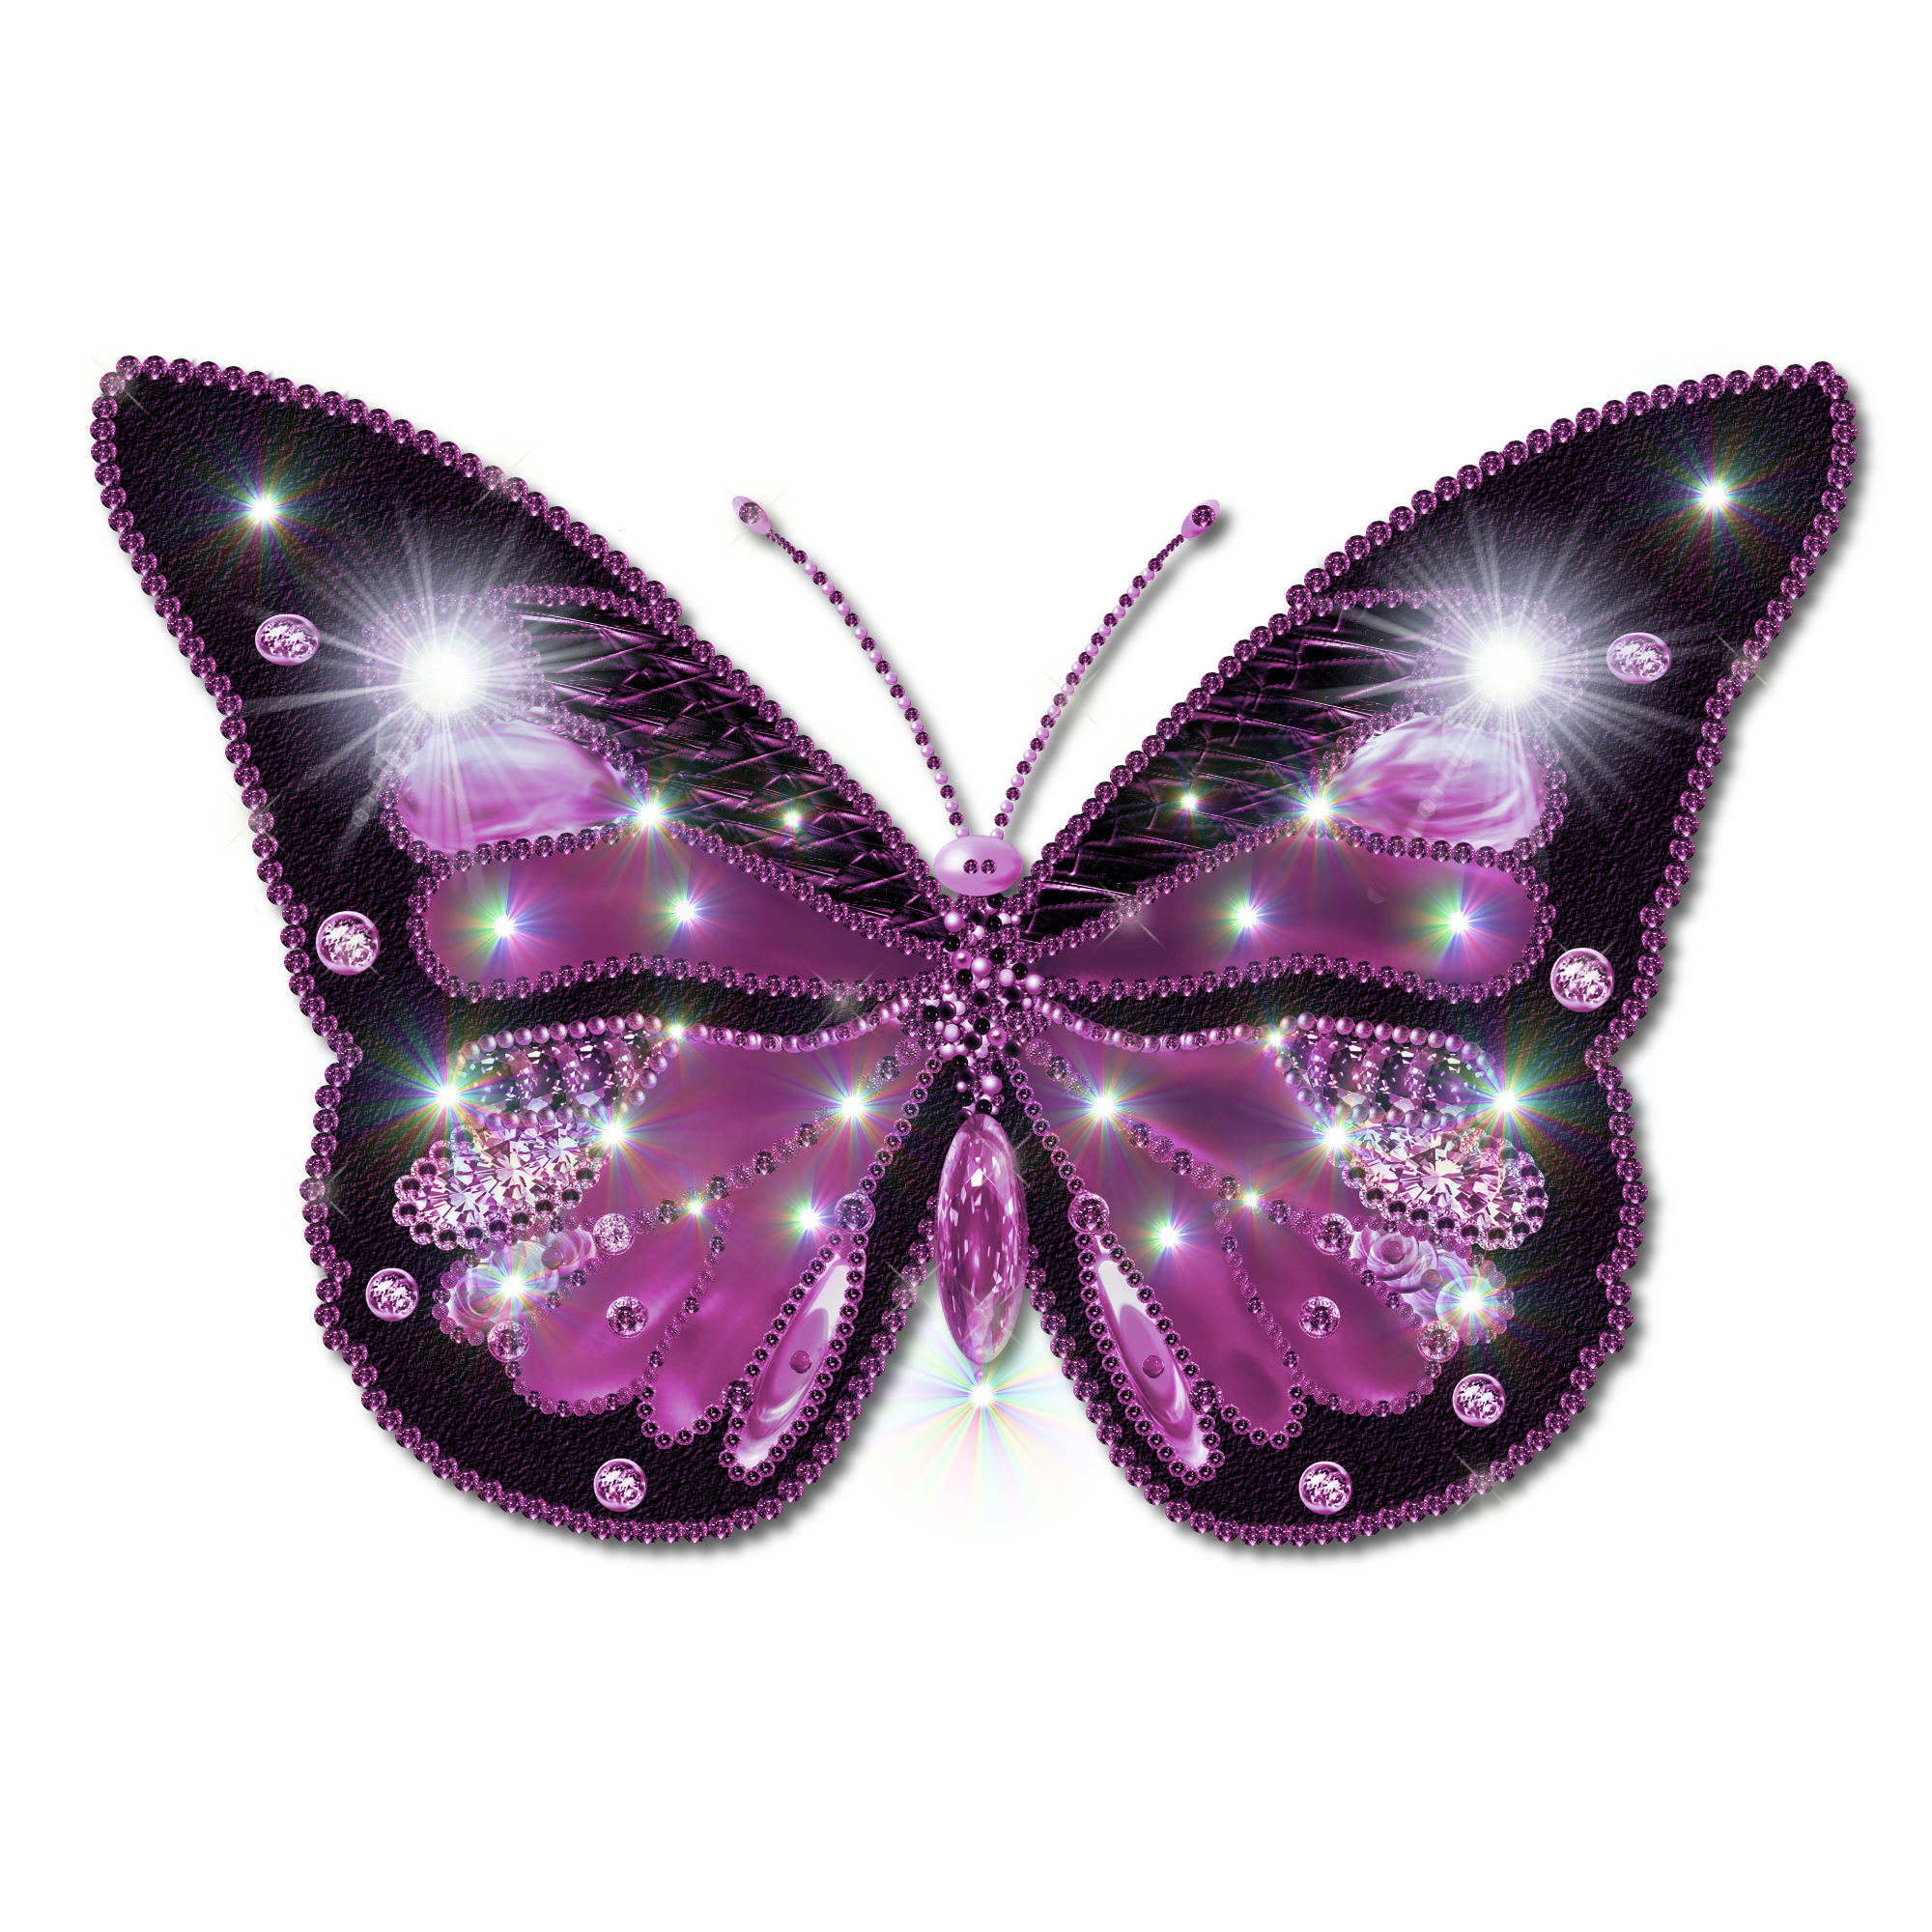 Tải về miễn phí bướm tuyệt vời PNG trong suốt này và biến mọi thiết bị của bạn thành một tác phẩm nghệ thuật. Với nền trong suốt, bướm hồng màu sẽ tạo ra một không gian mang tính thẩm mỹ cao và đầy sức sống. Ảnh nền trong suốt png bướm hồng màu này chắc chắn sẽ đem lại cho bạn cảm giác mới mẻ.